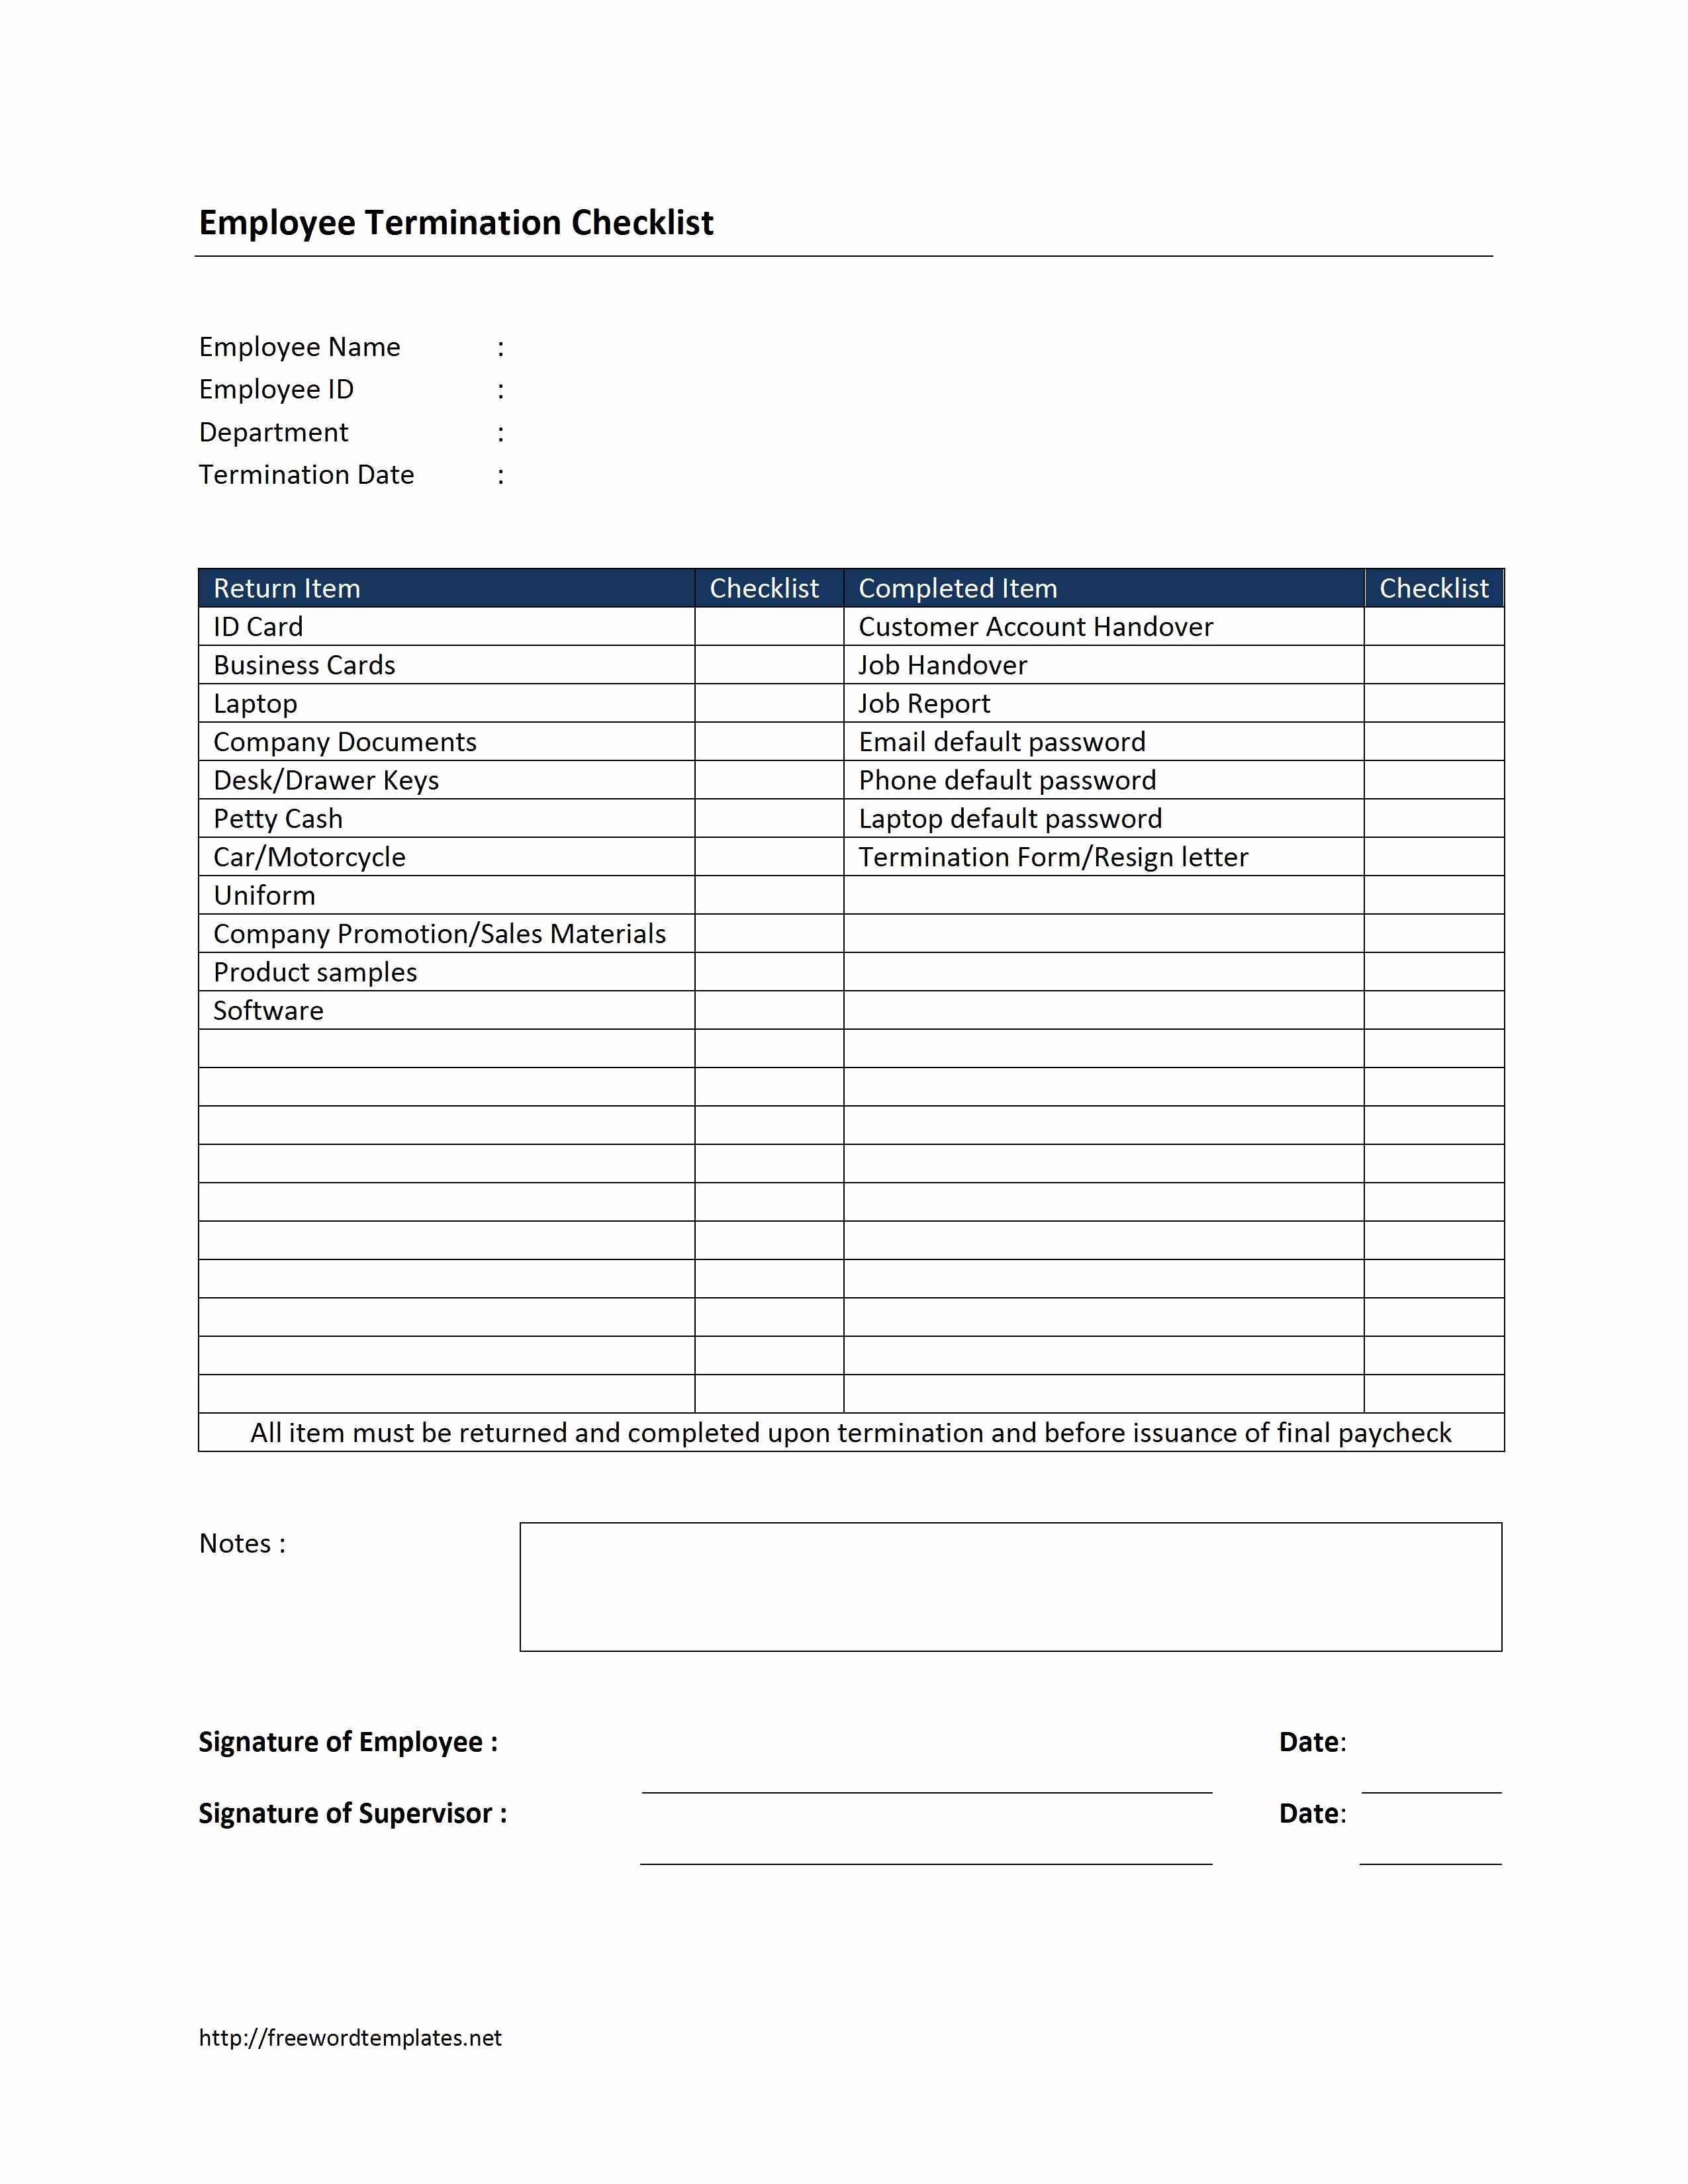 Employment Termination form Template Luxury Employee Termination Checklist